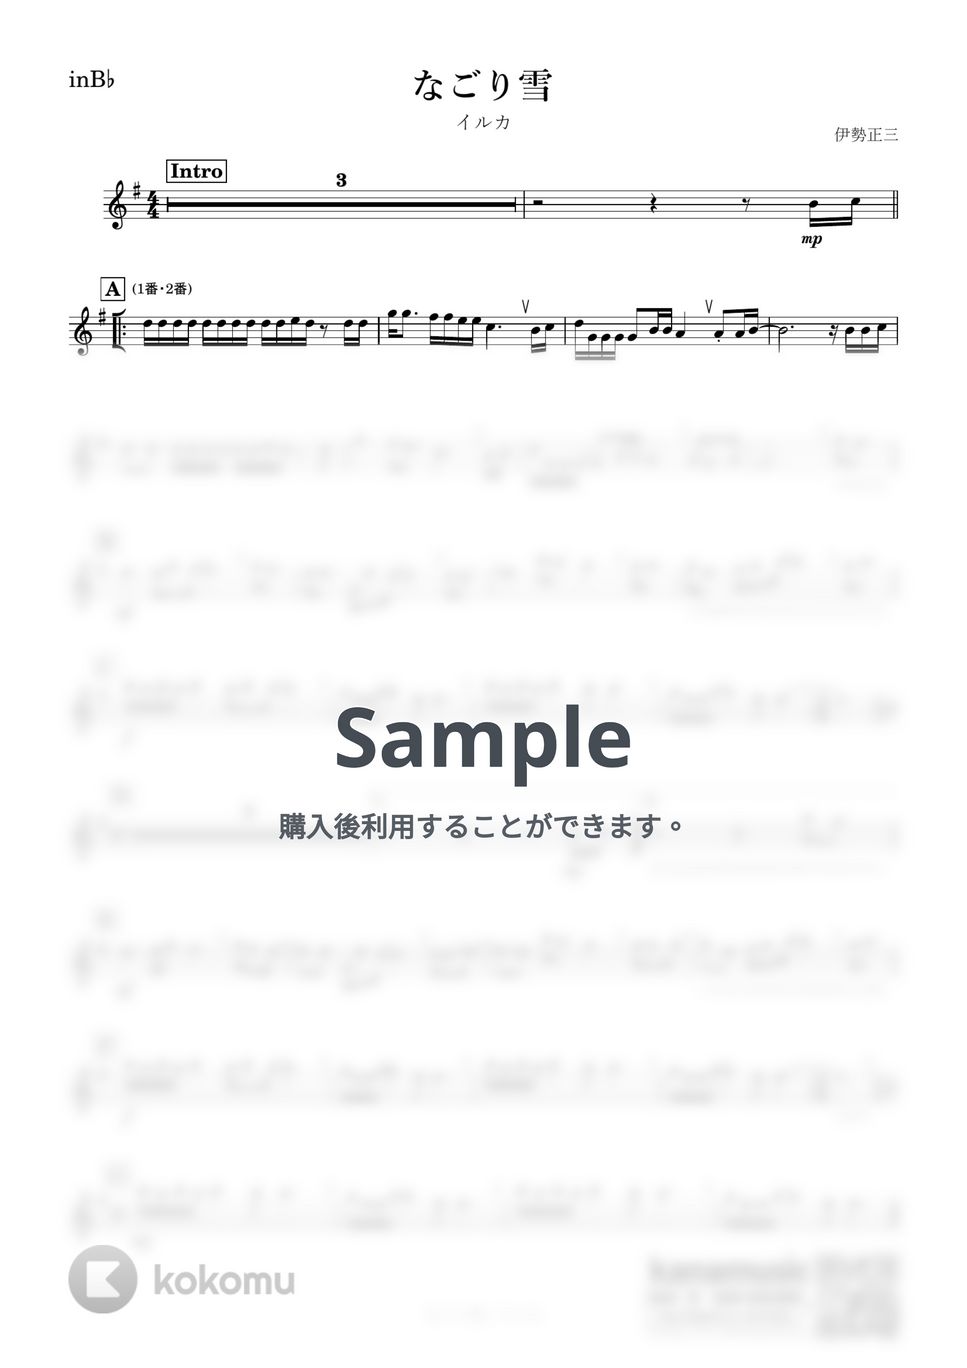 イルカ - なごり雪 (B♭) by kanamusic